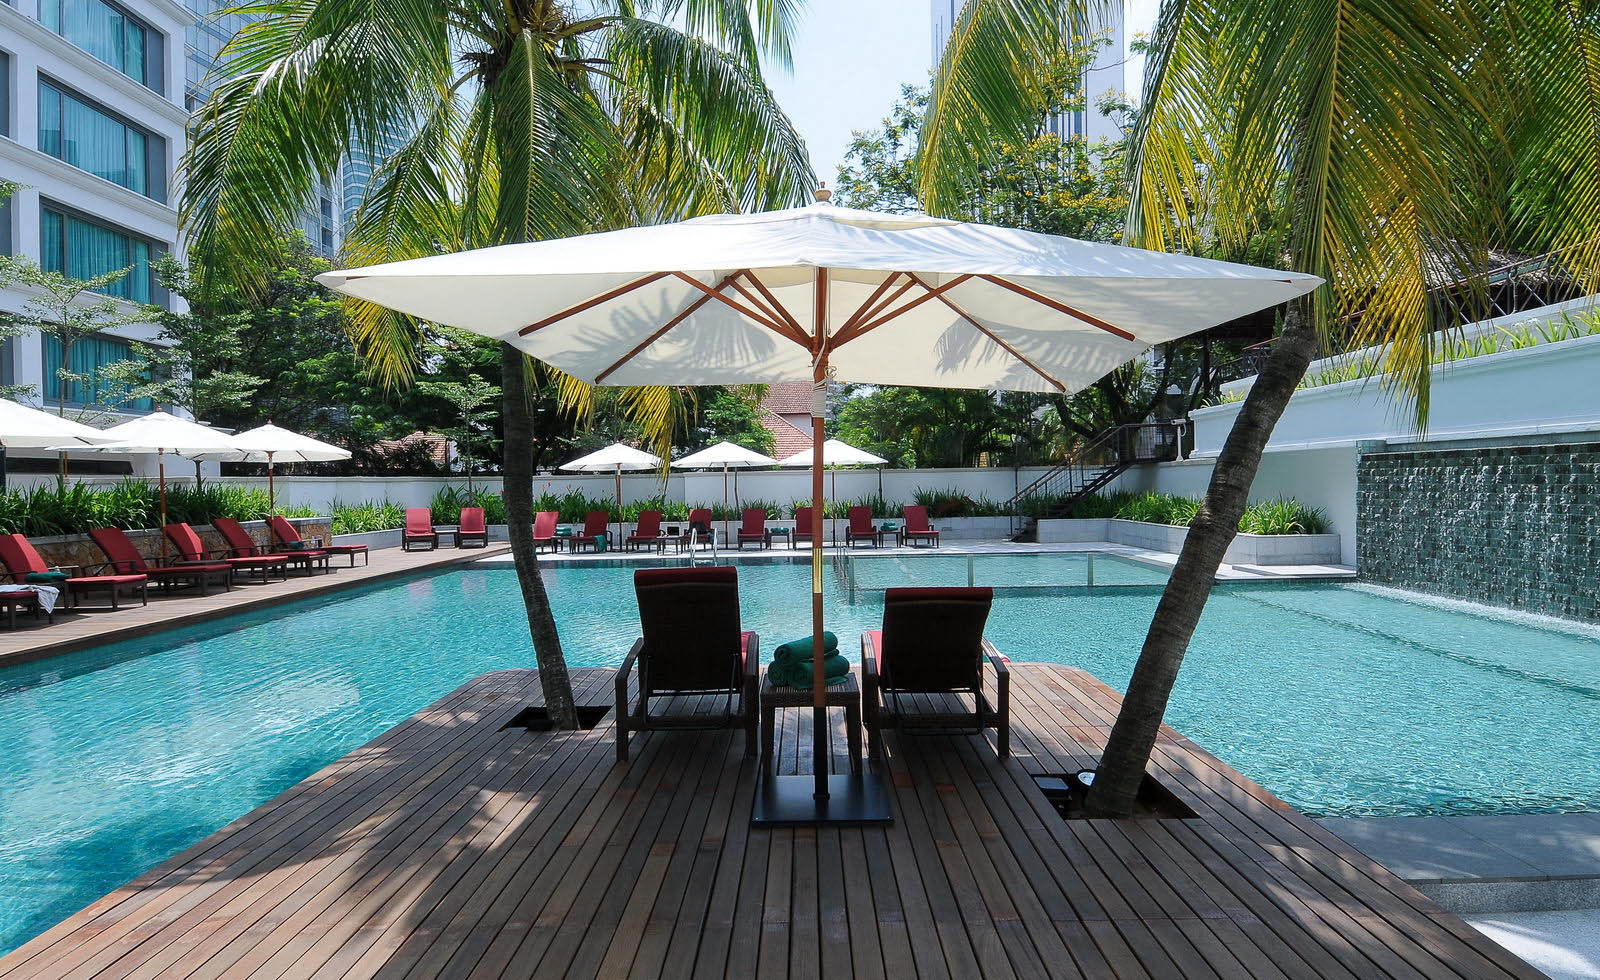 تور مالزي هتل میکاسا- آژانس مسافرتي و هواپيمايي آفتاب ساحل آبي